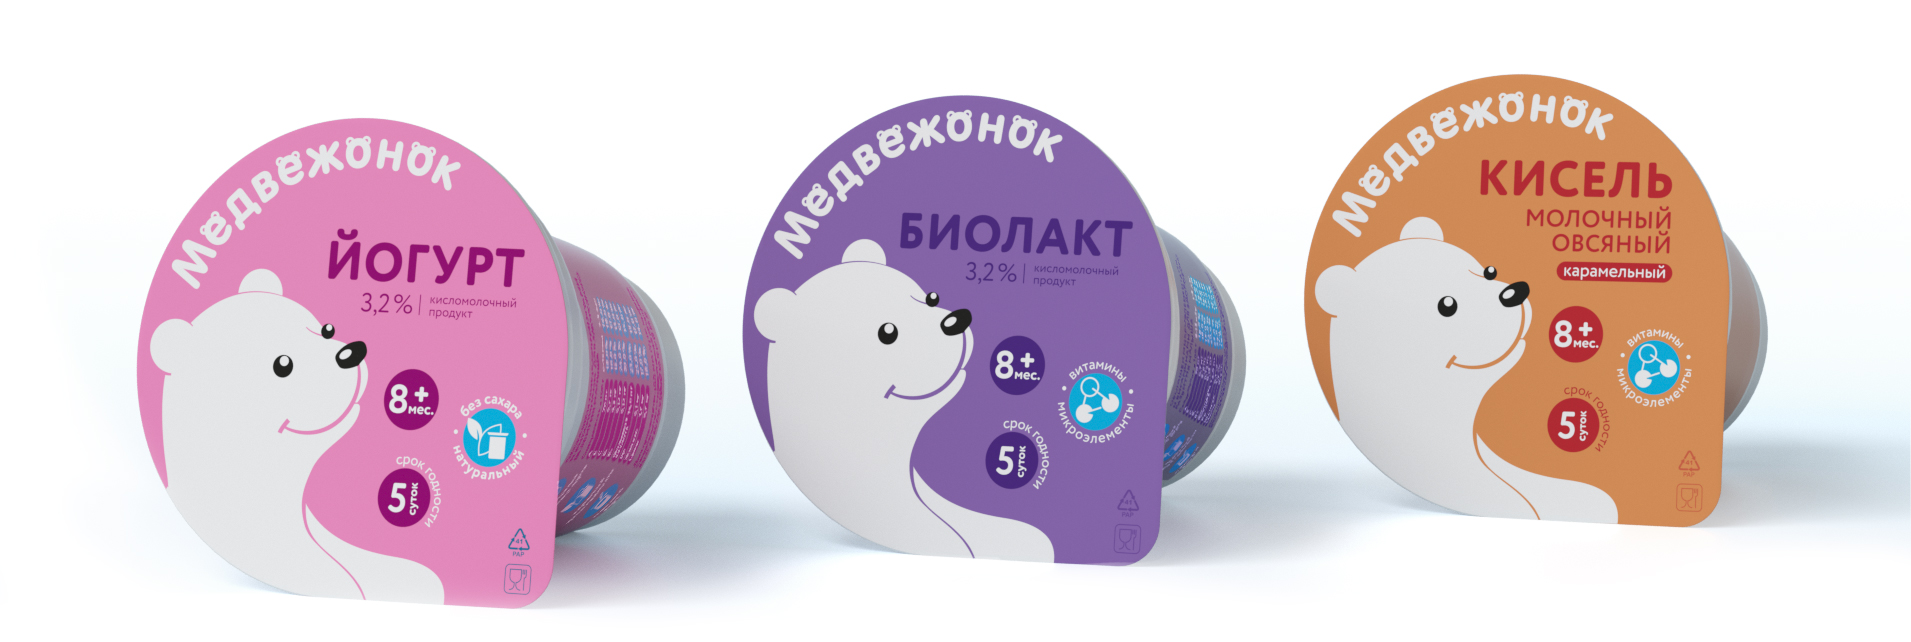 Дизайн упаковки йогуртов ЦПС